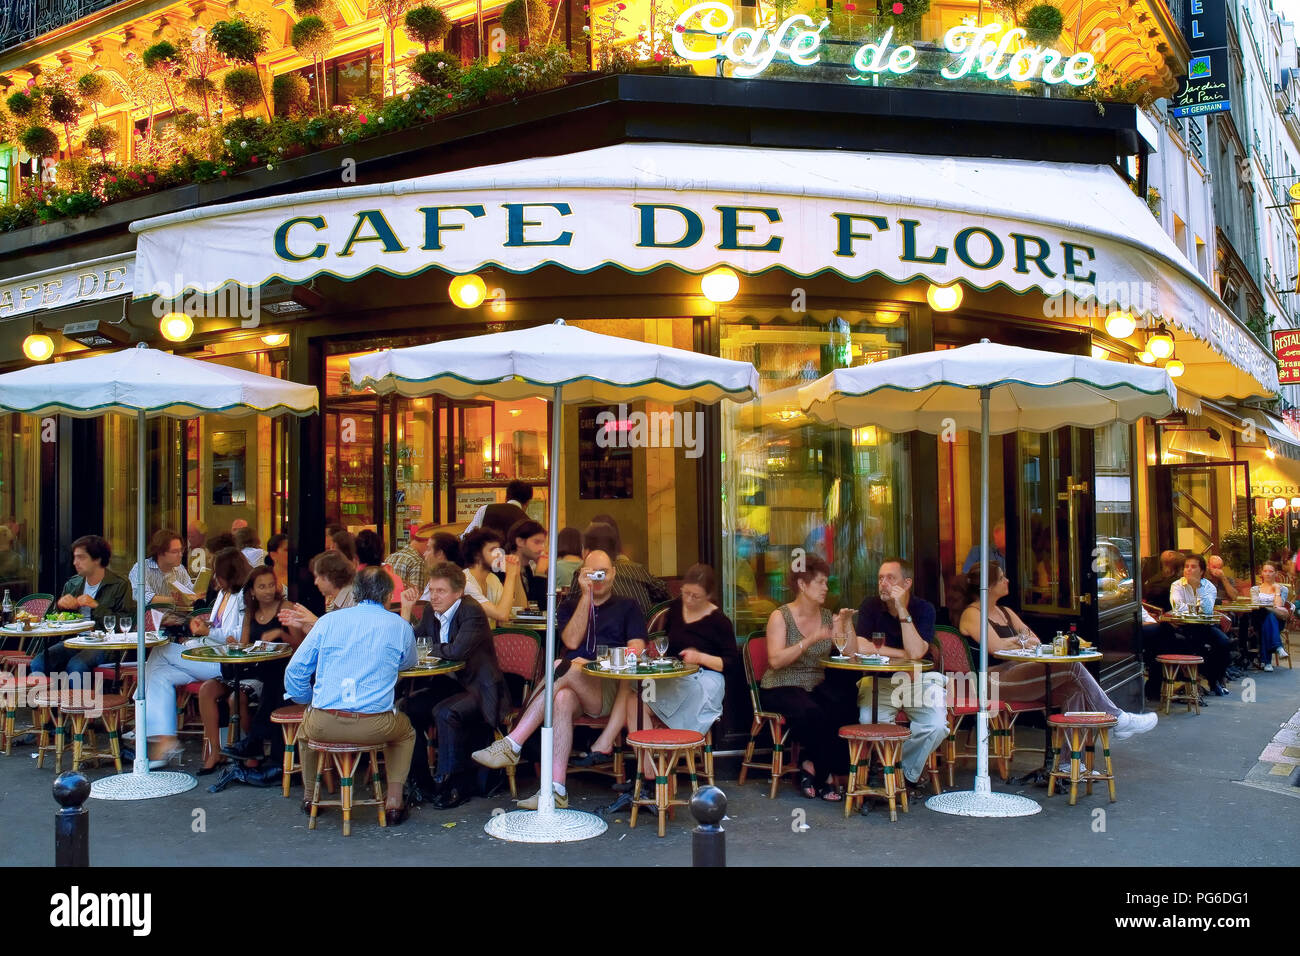 cafe de flore in St Germain des Pres Paris France Stock Photo